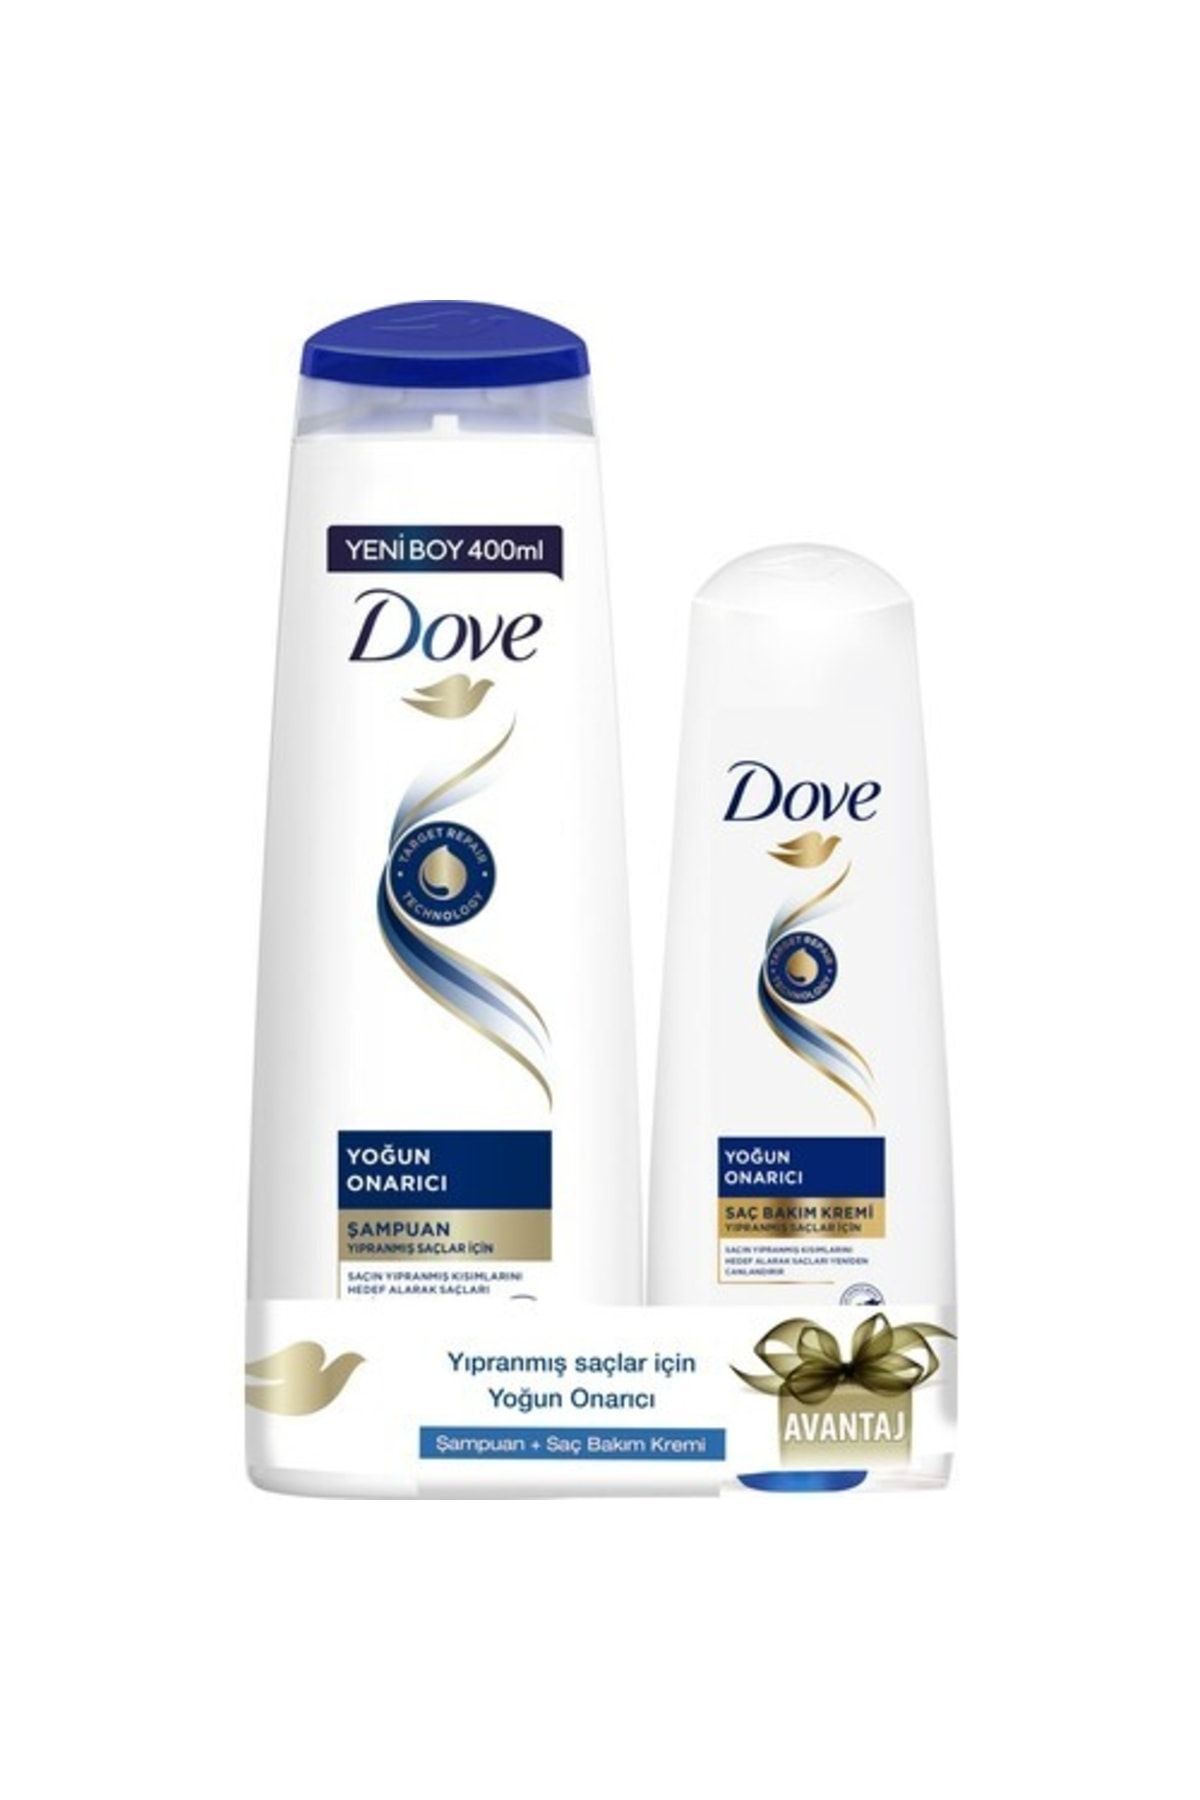 Dove Saç Bakım Şampuanı Yoğun Onarıcı Yıpranmış Saçlar Için 400 Ml + Saç Bakım Kremi 200 Ml